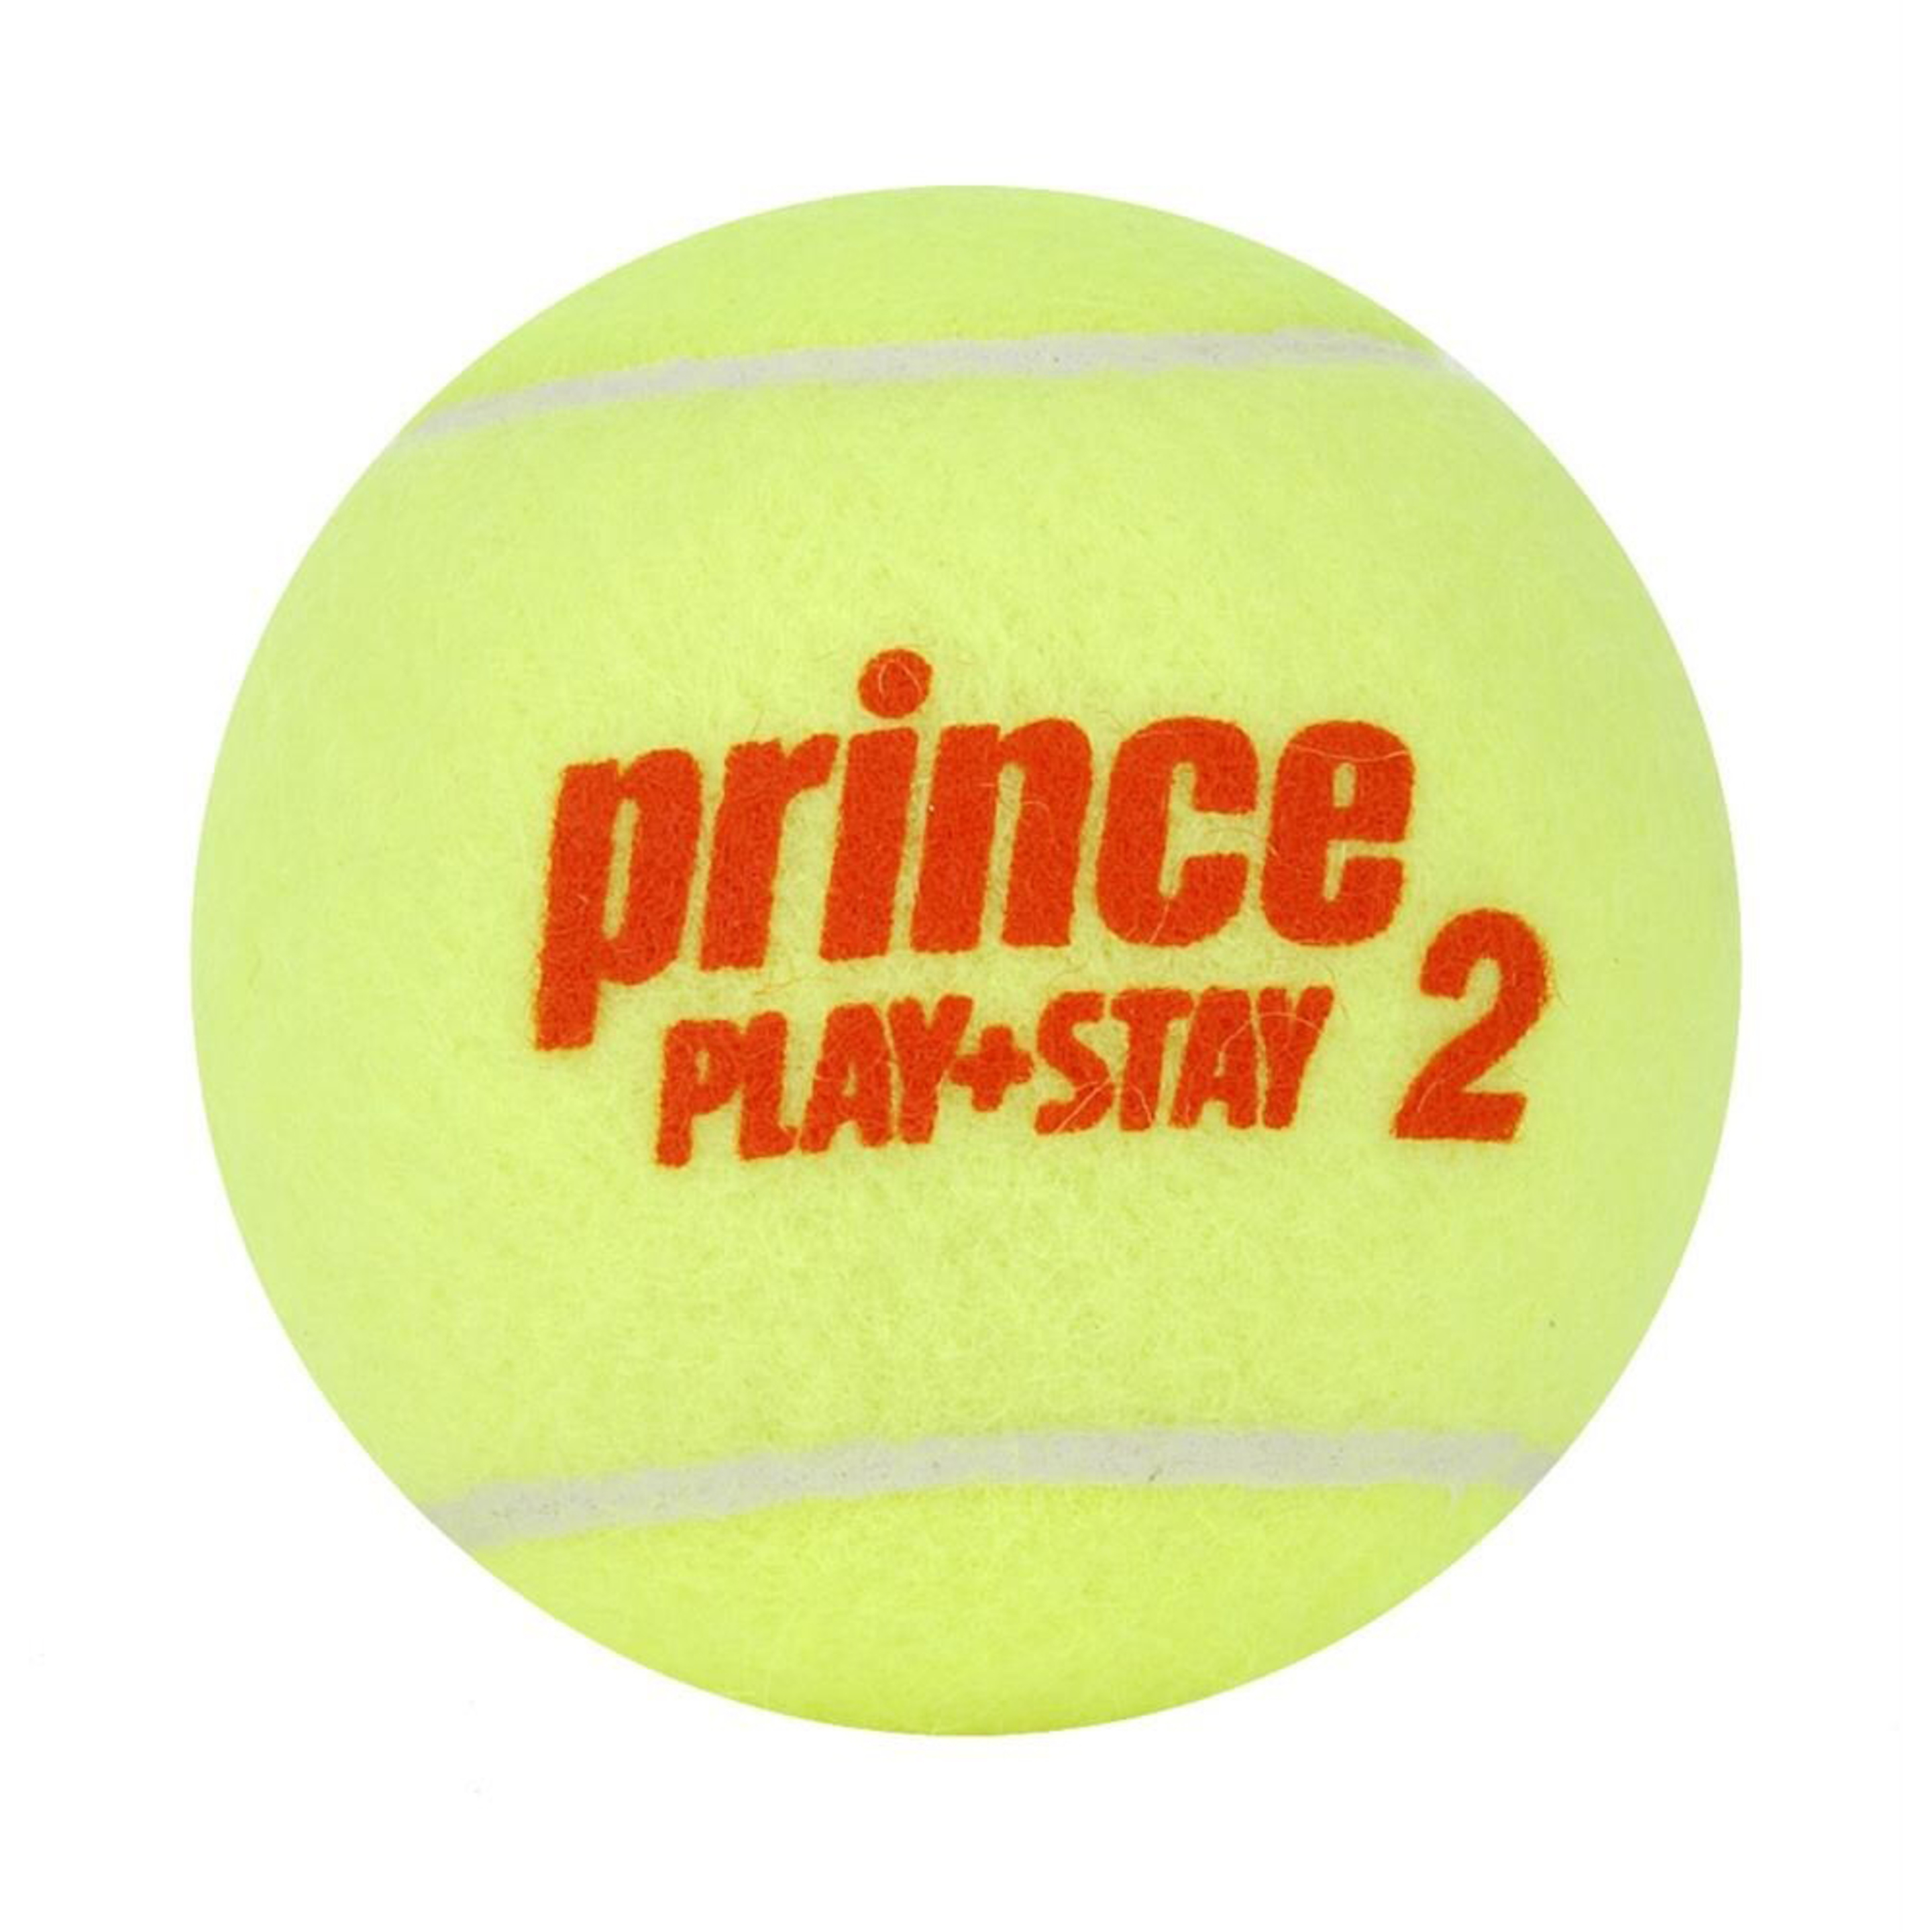 Caja De 24 Botes De 3 Bolas De Tenis Prince Play & Stay Stage 2 - Amarillo  MKP